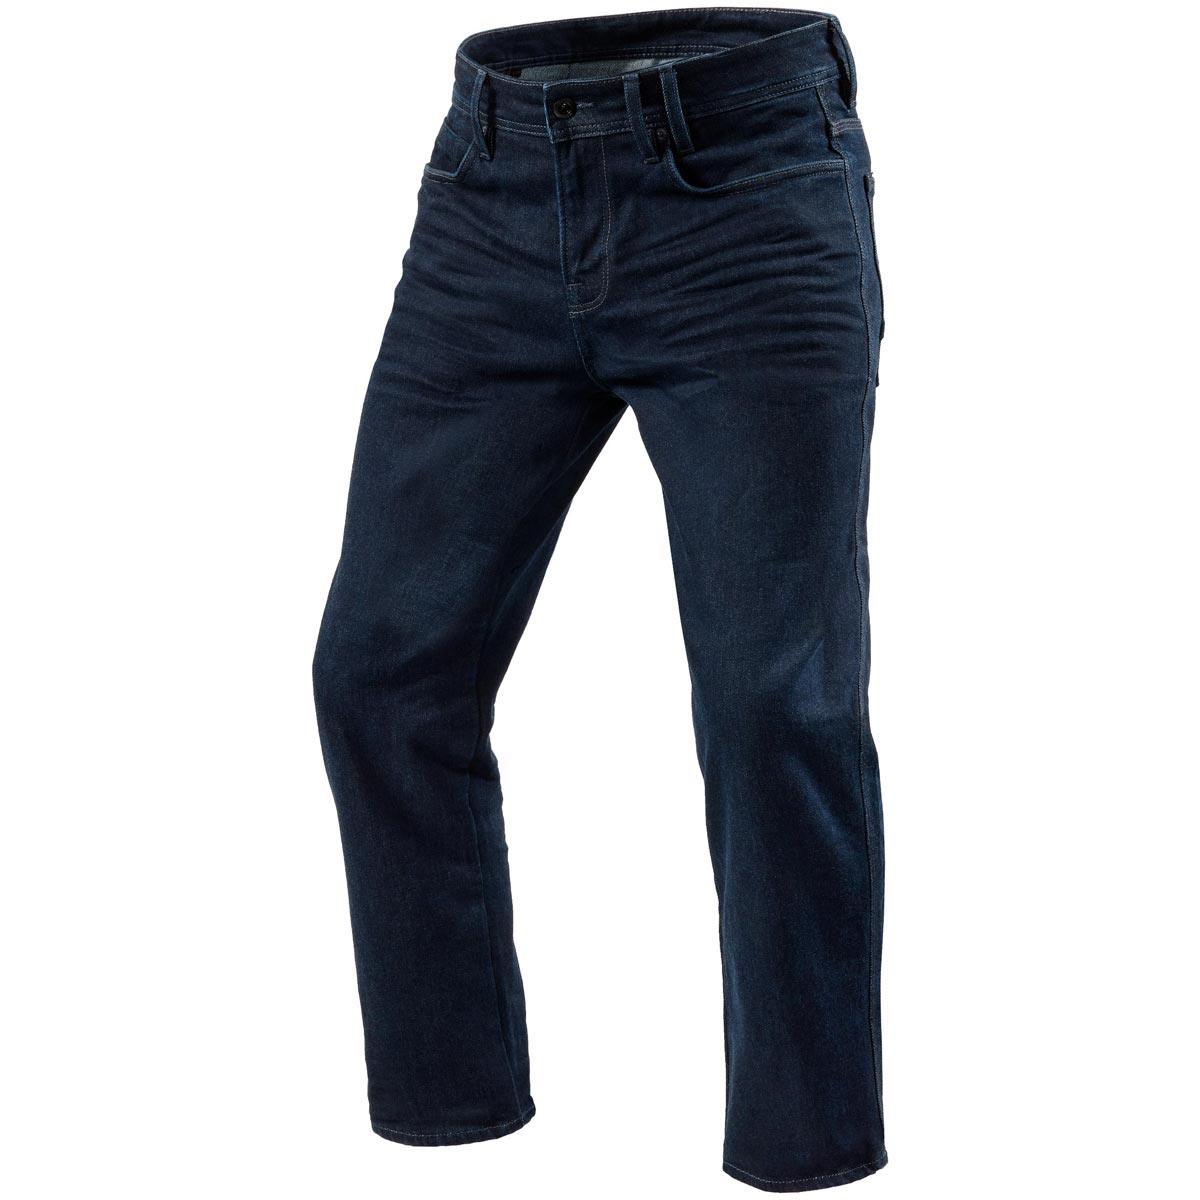 Rev It! Lombard 3 Jeans RF 34in Leg - Dark Blue Used | GetGeared.co.uk ...